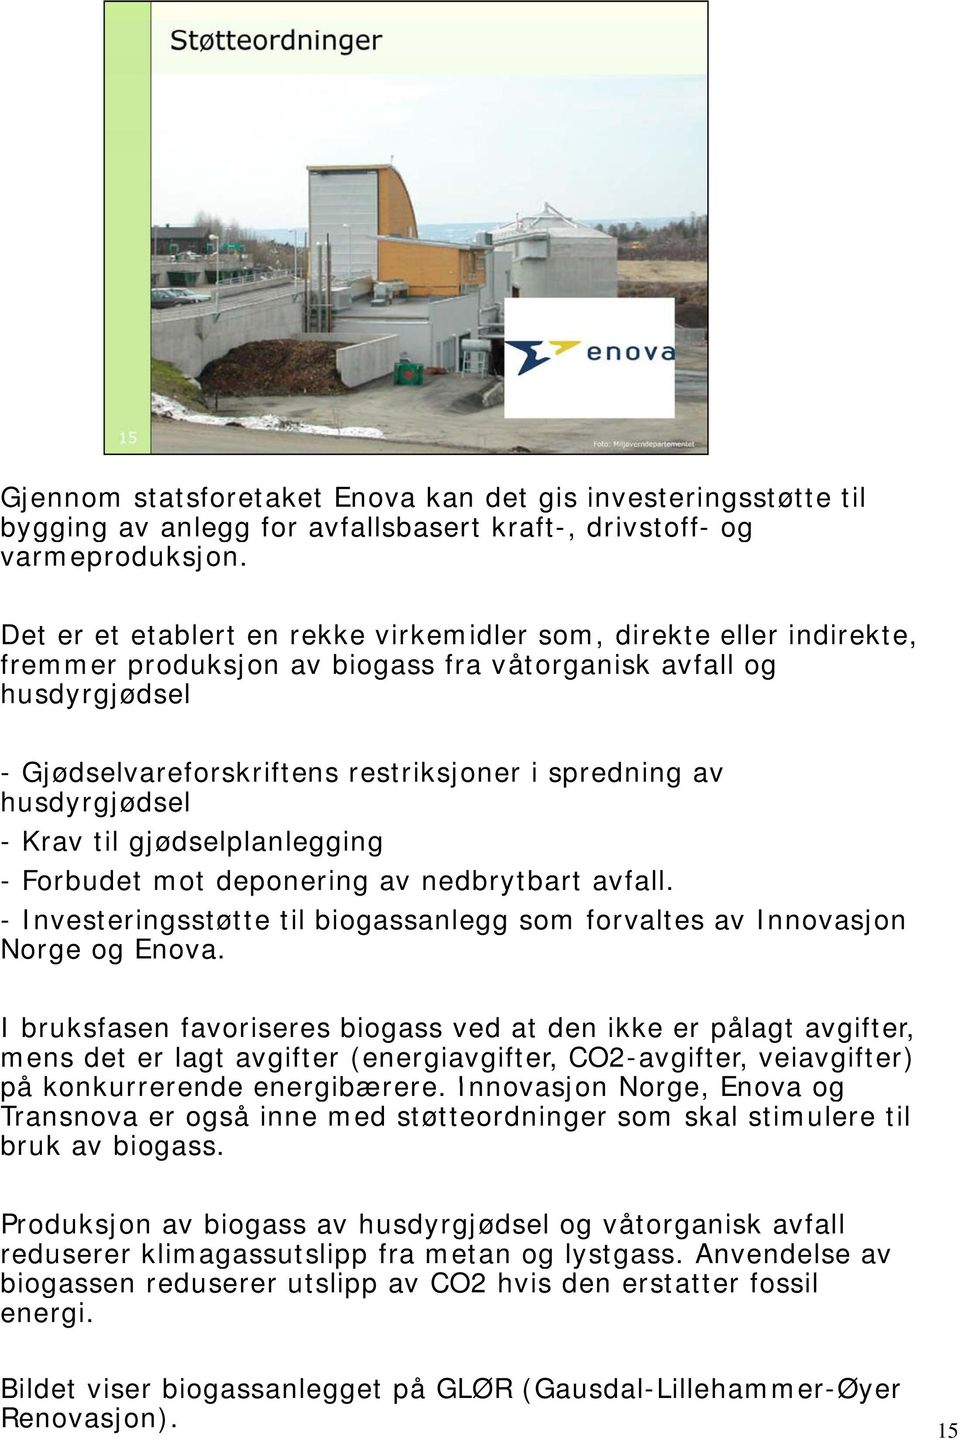 husdyrgjødsel - Krav til gjødselplanlegging - Forbudet mot deponering av nedbrytbart avfall. - Investeringsstøtte til biogassanlegg som forvaltes av Innovasjon Norge og Enova.